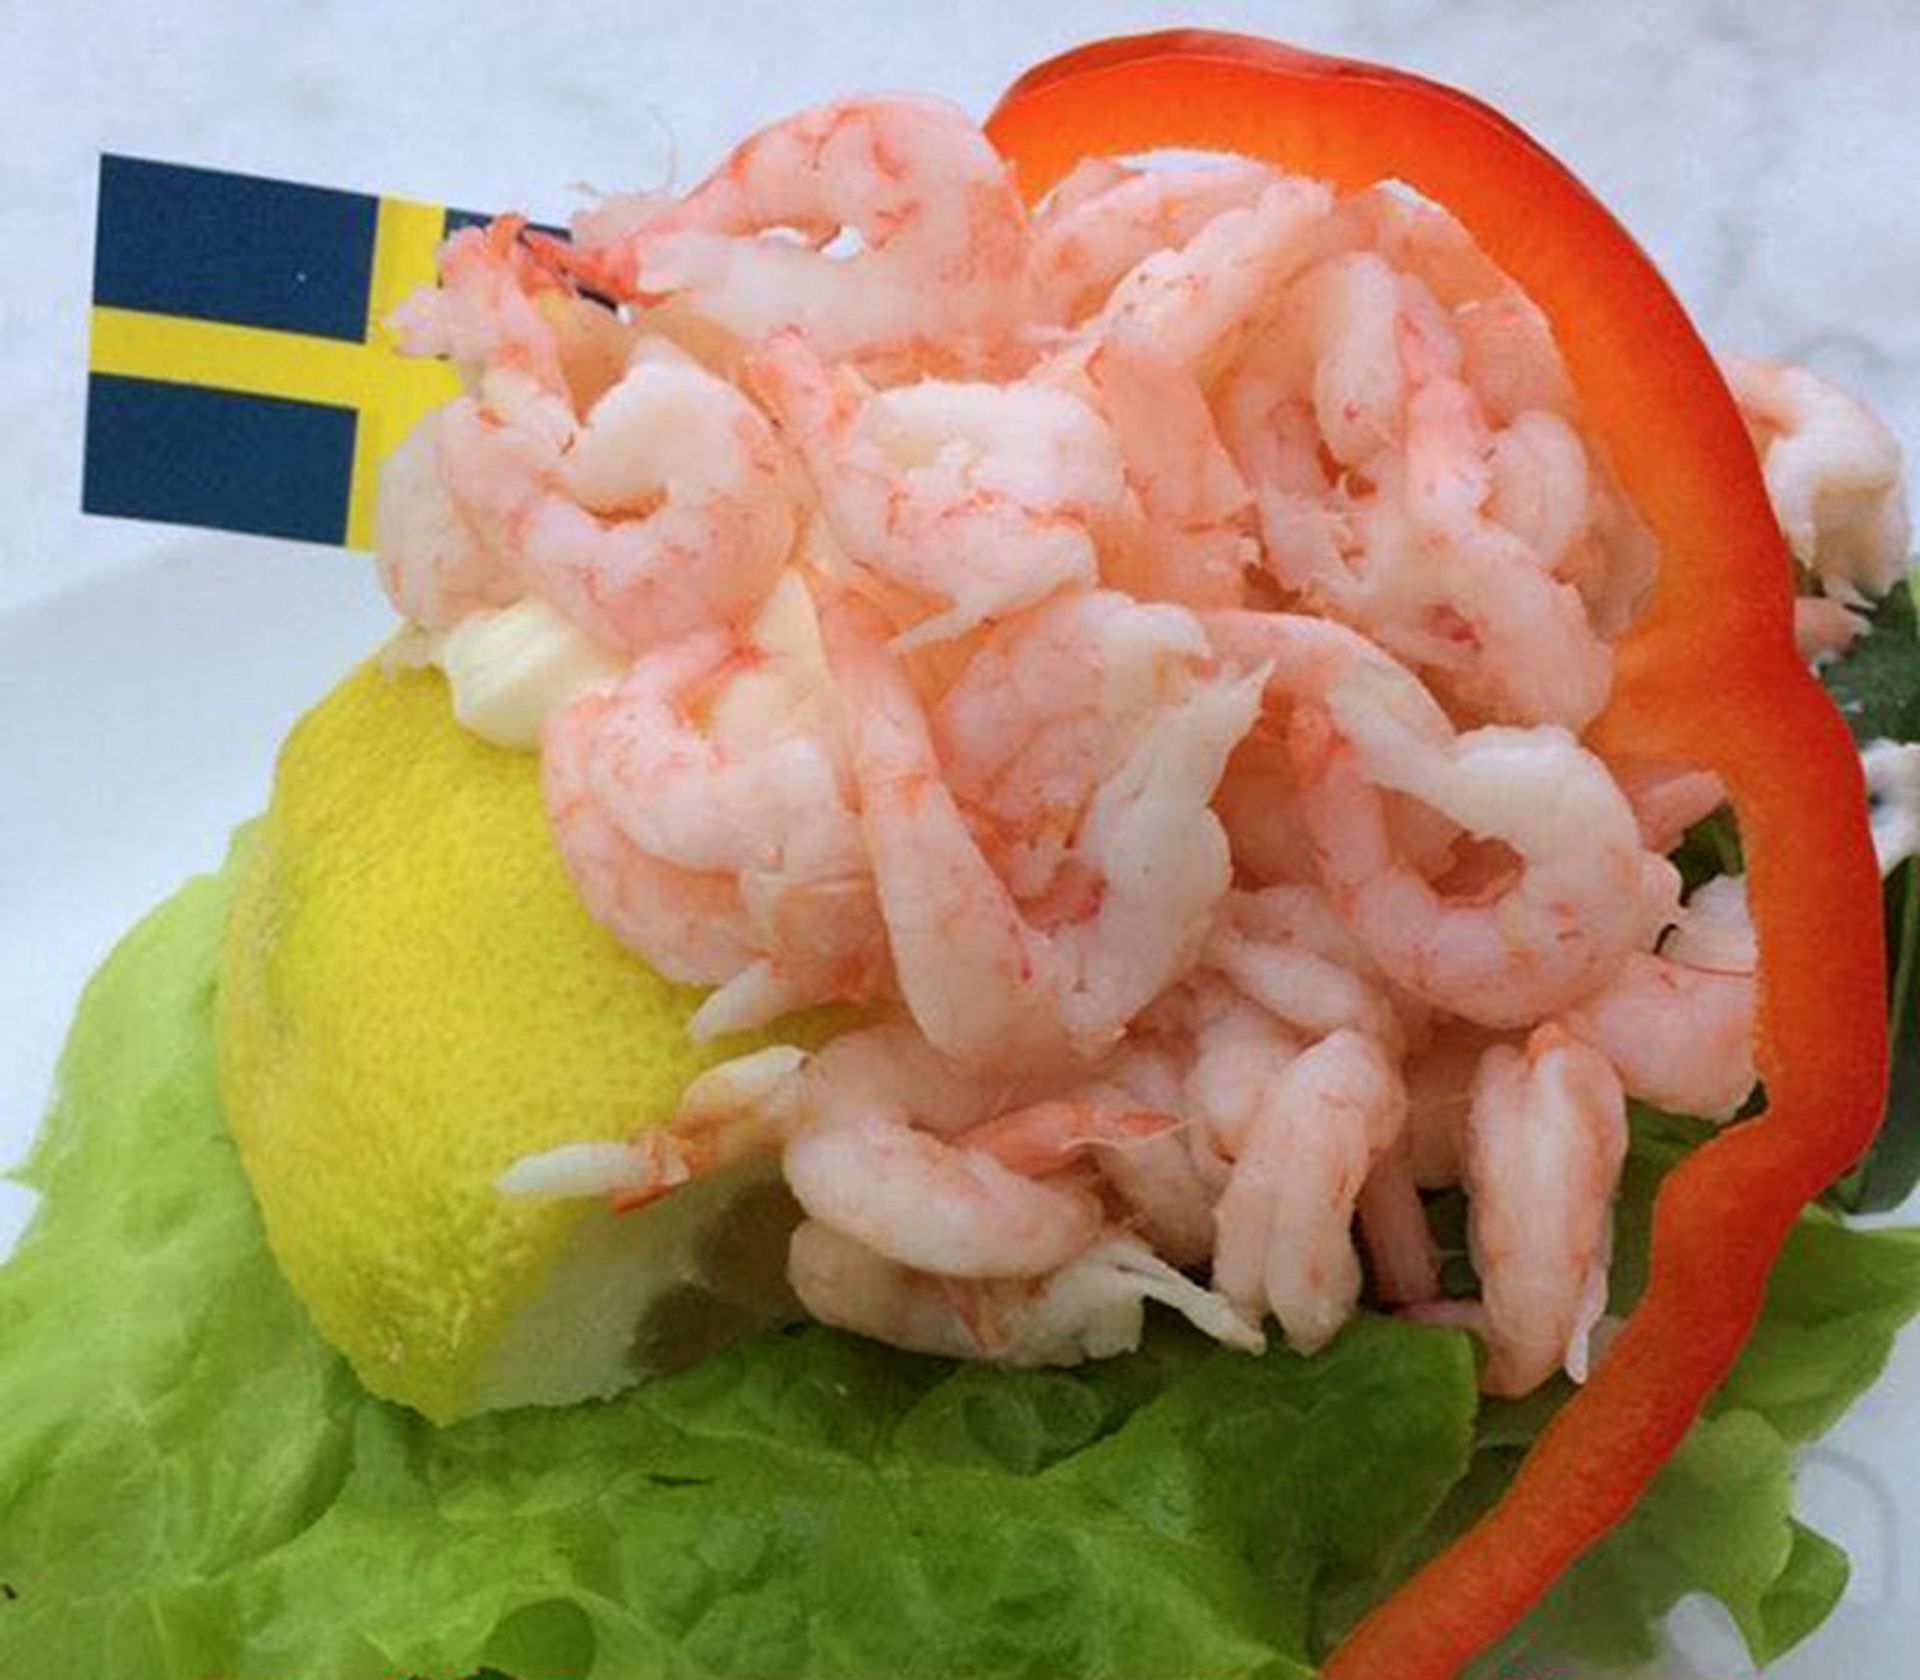 The shrimp sandwich, or, räksmörgås